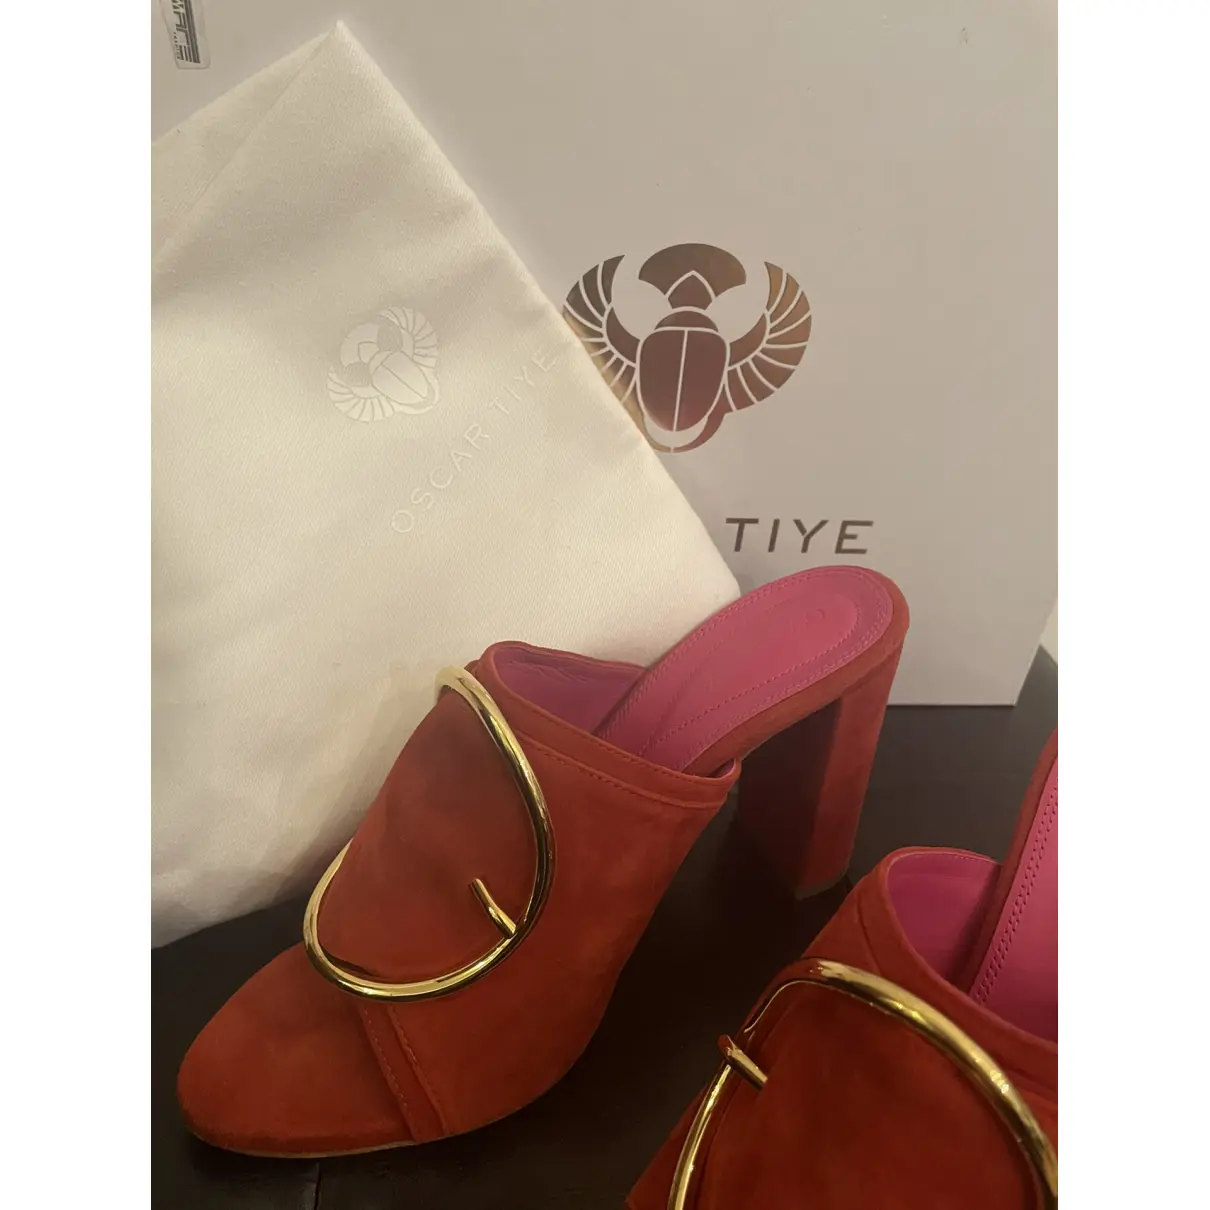 Buy Oscar Tiye Sandals online